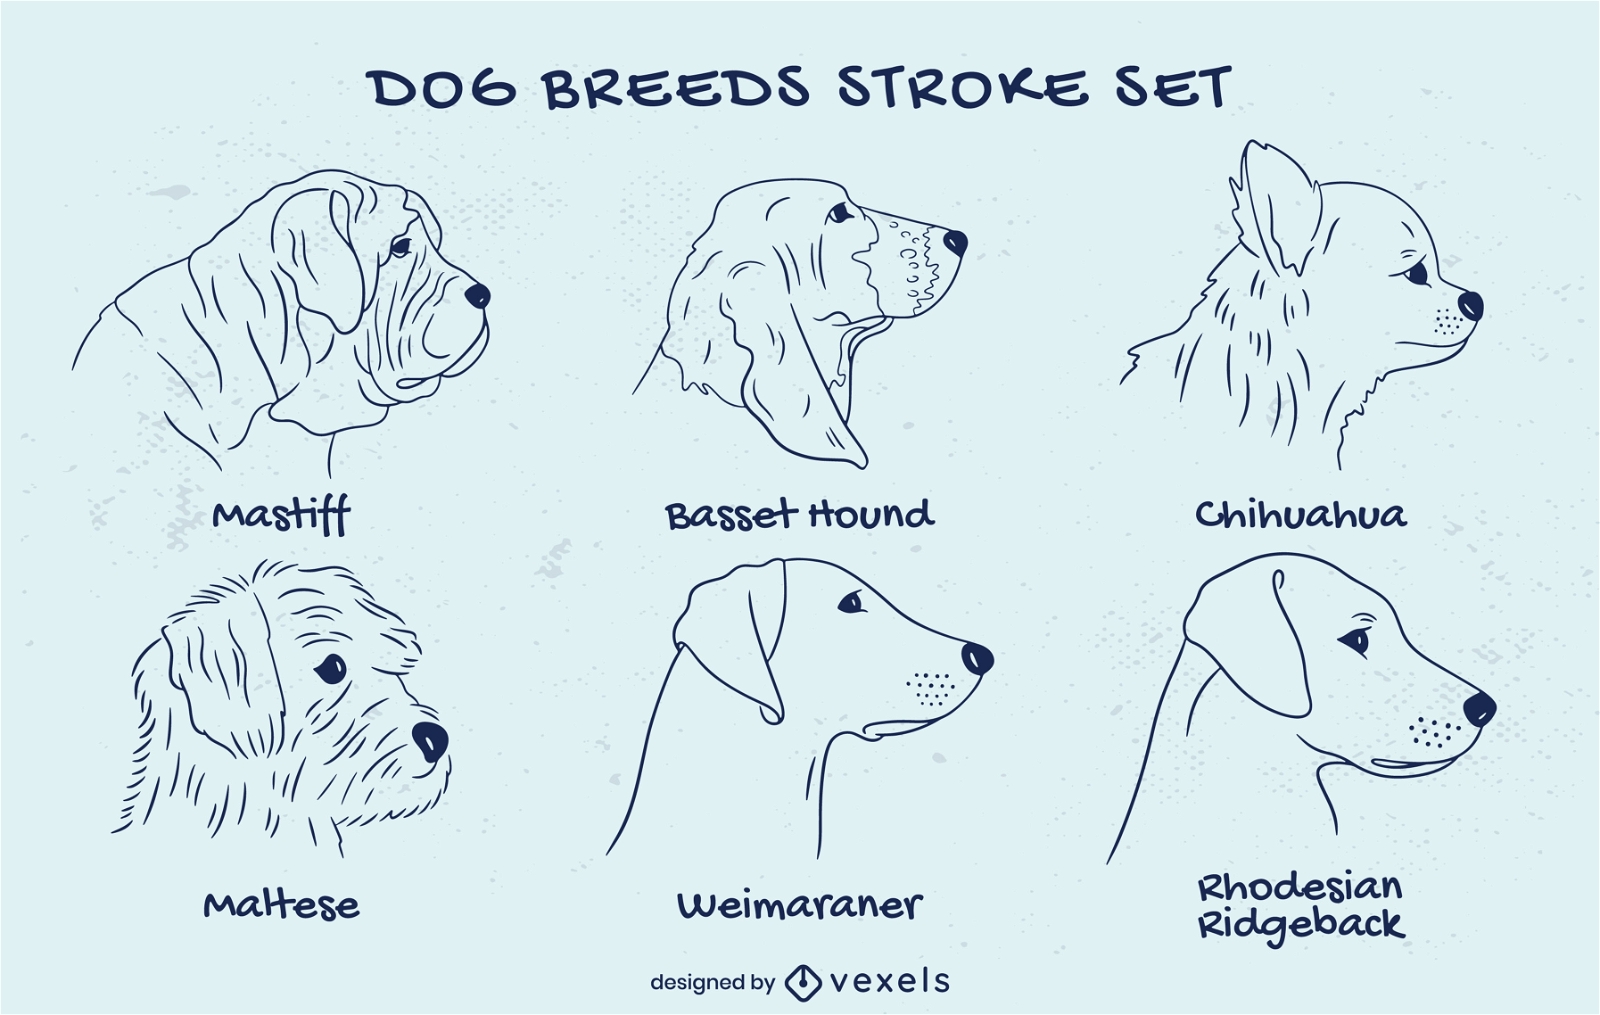 Different dog breeds stroke set